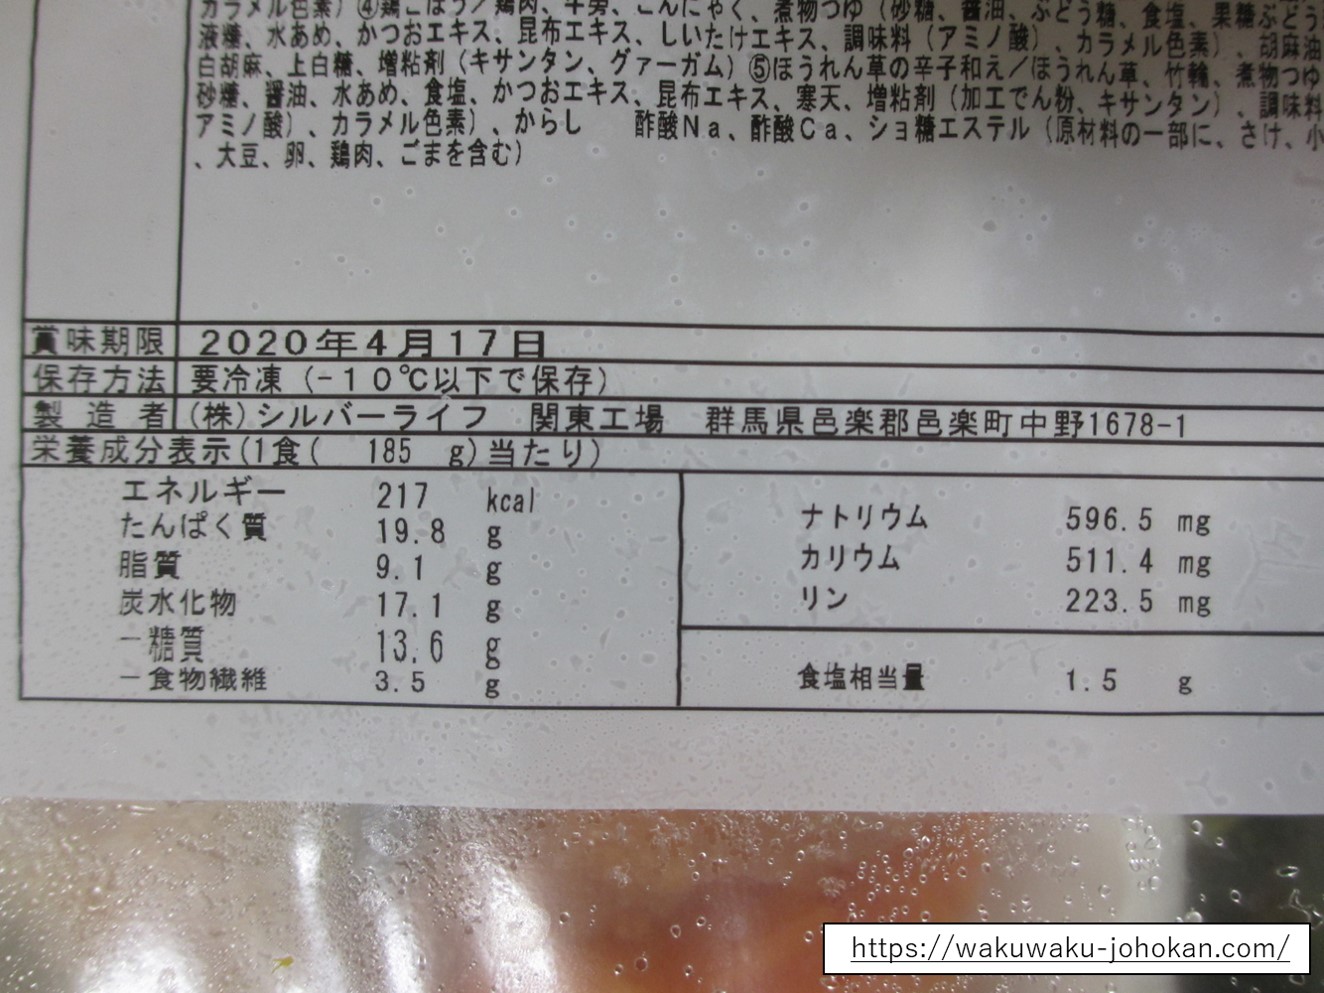 鮭の醤油幽庵焼き弁当の栄養成分